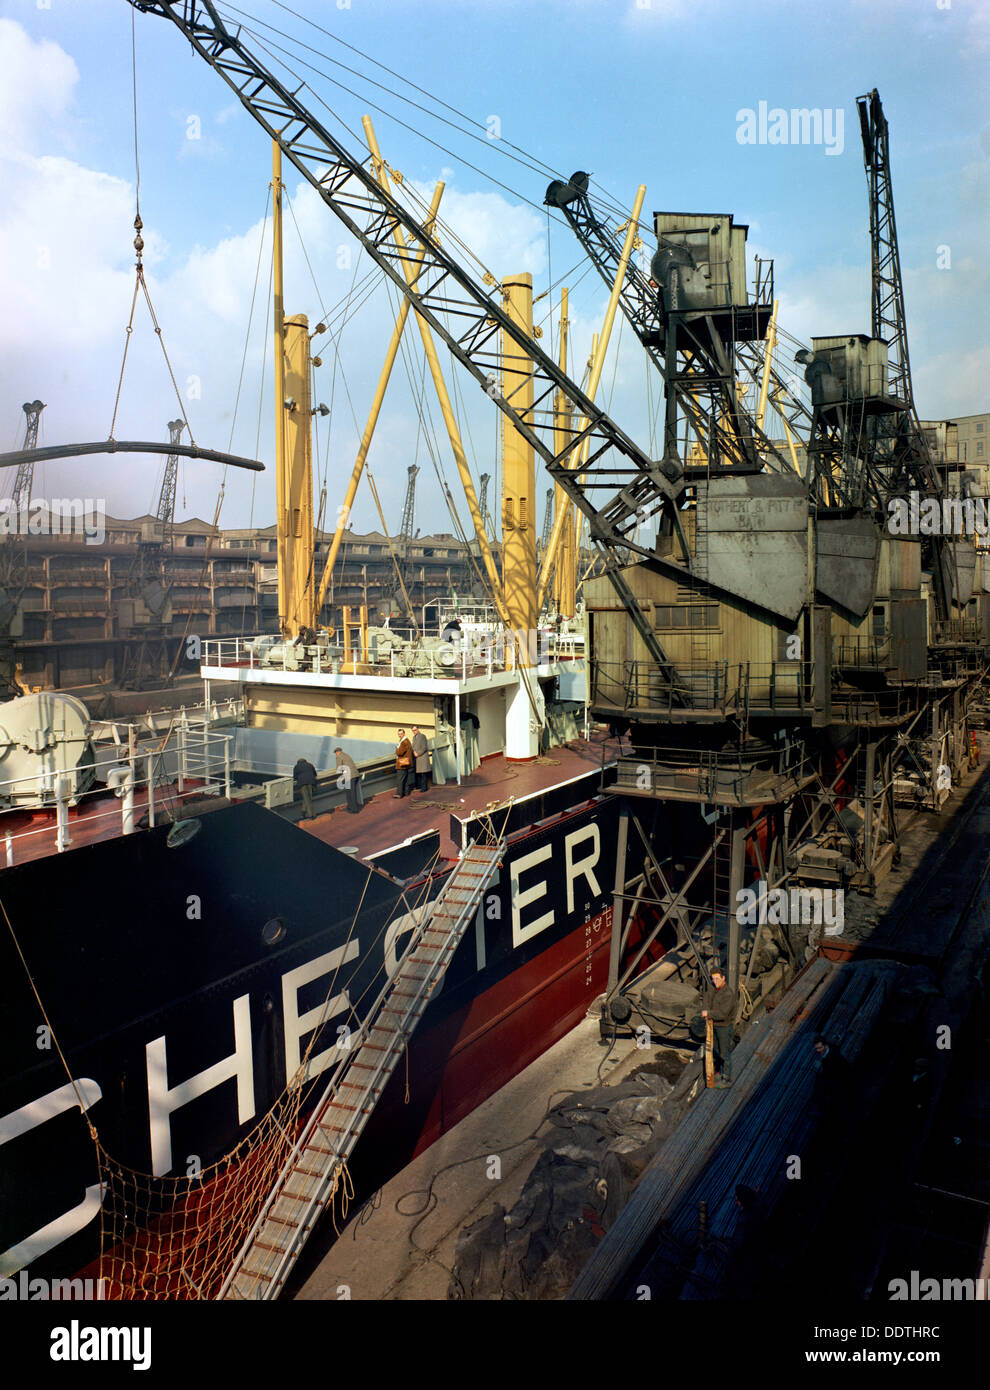 La renombrada "Manchester" siendo cargado con acero para exportación, Manchester, 1964. Artista: Michael Walters Foto de stock